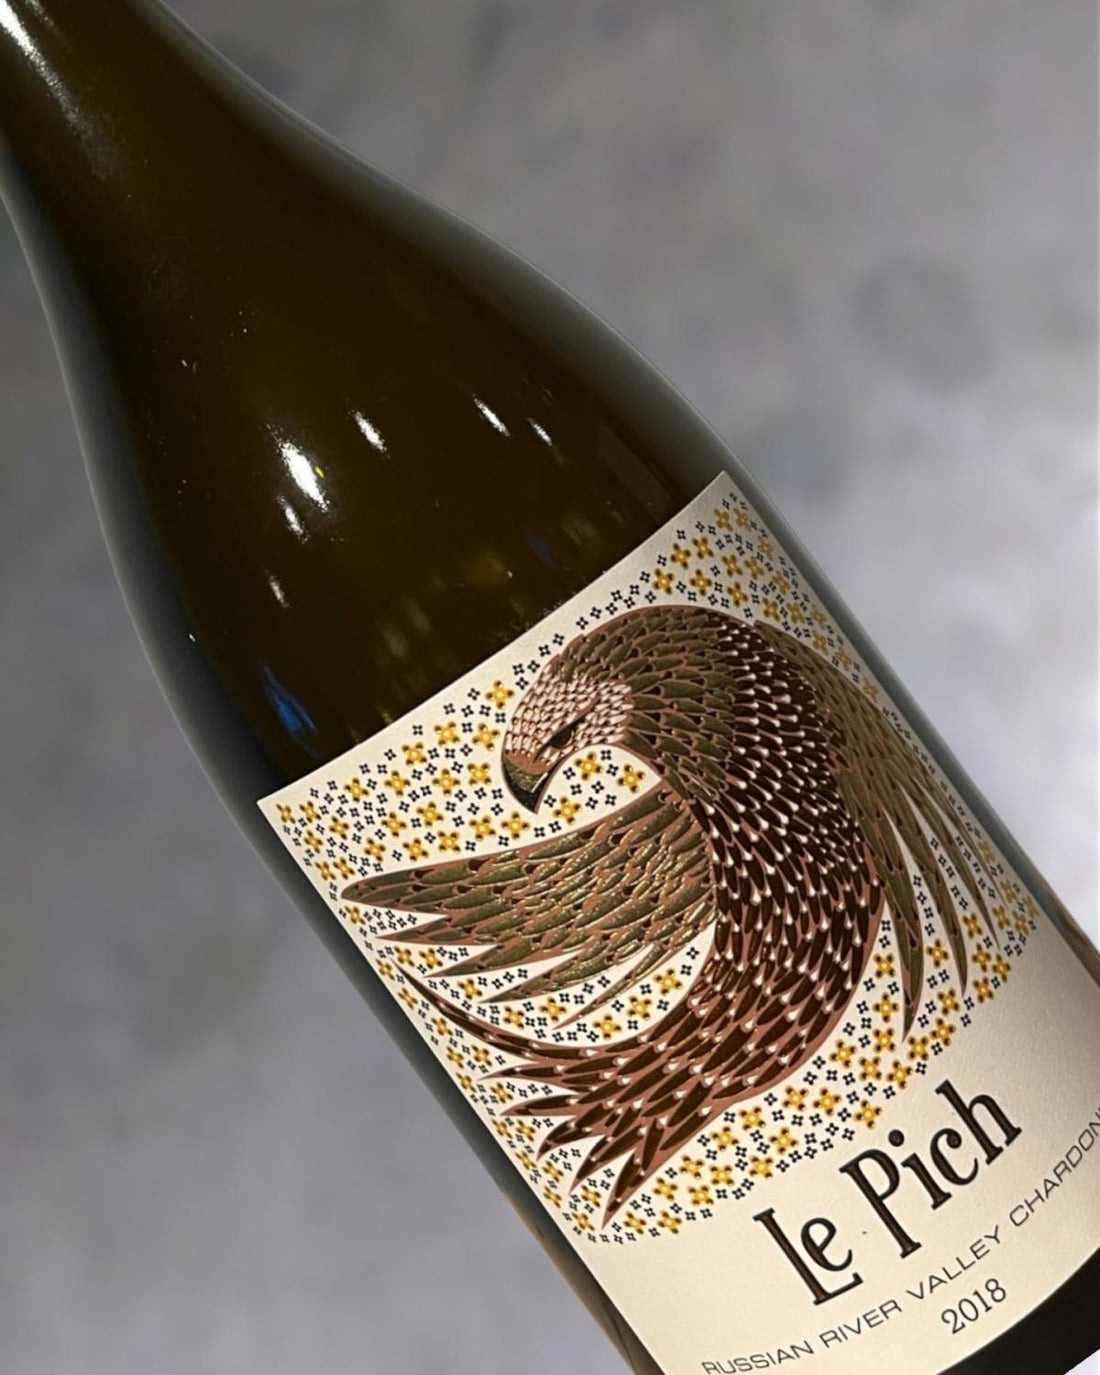 Purlieu Le Pich Chardonnay